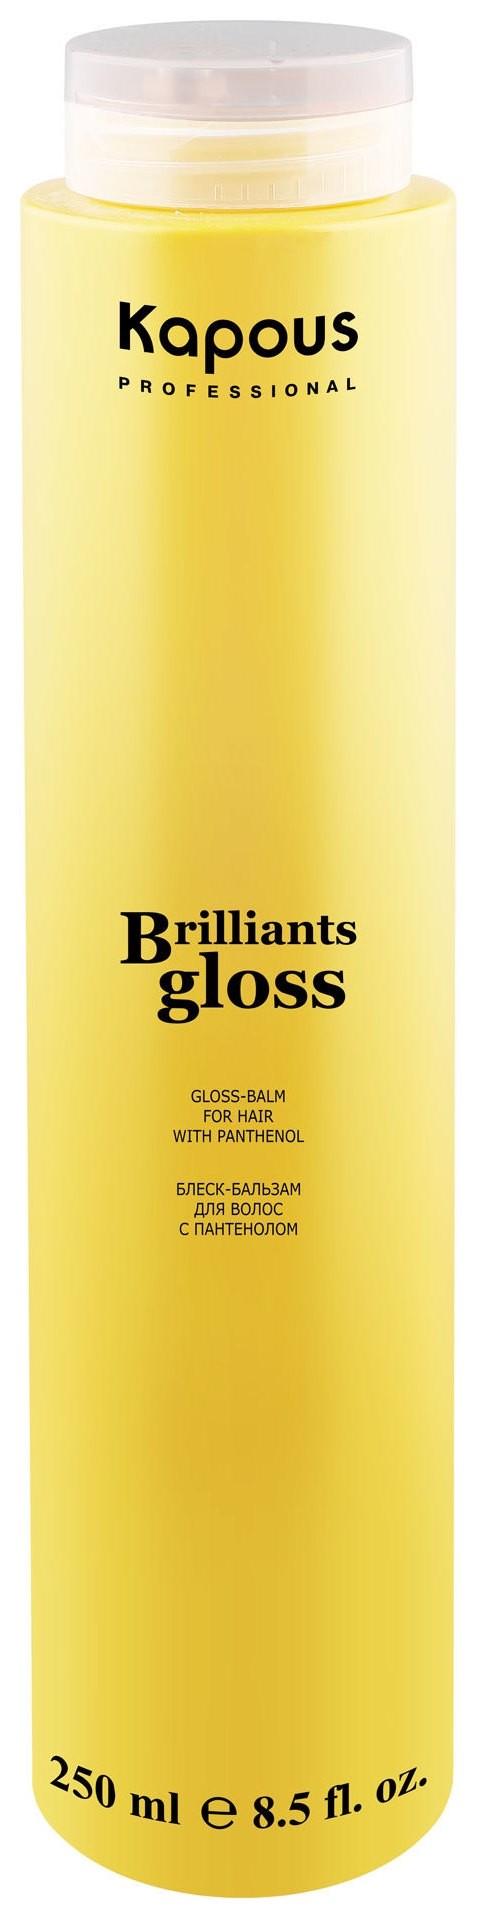 Блеск-бальзам для волос "Brilliants gloss" Kapous Professional